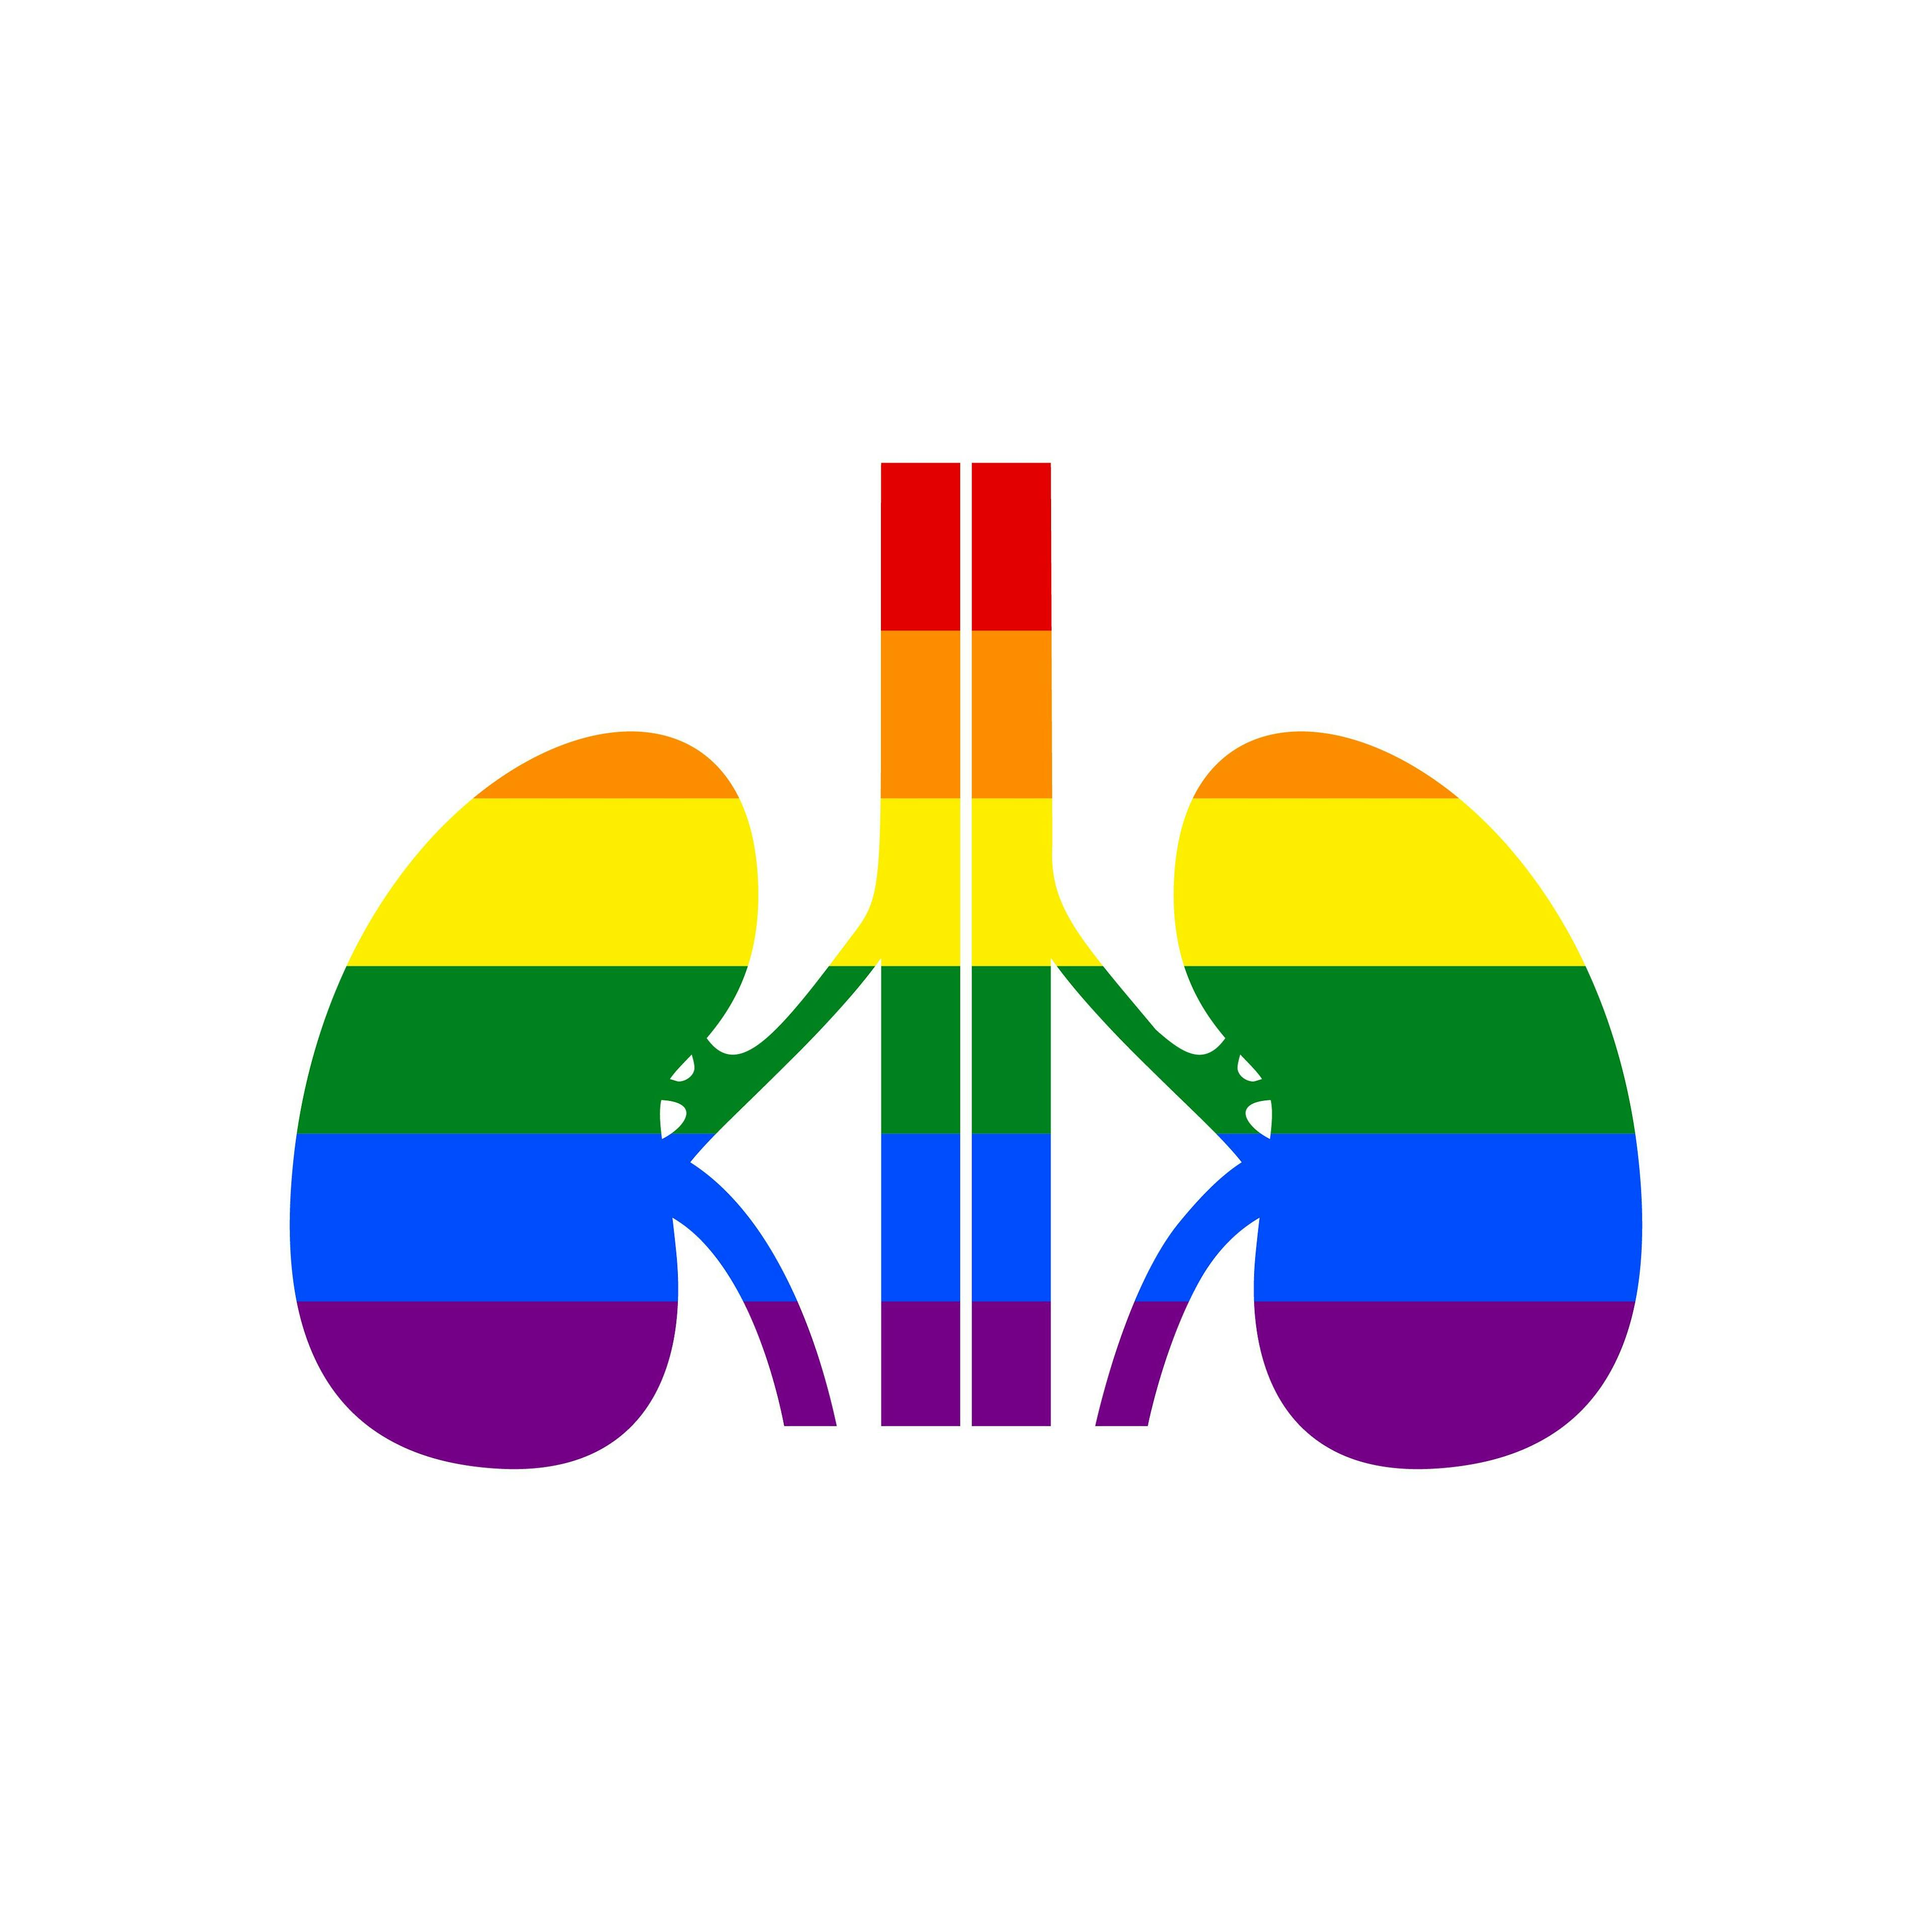 Pride Kidney | image credit: asmati - stock.adobe.com